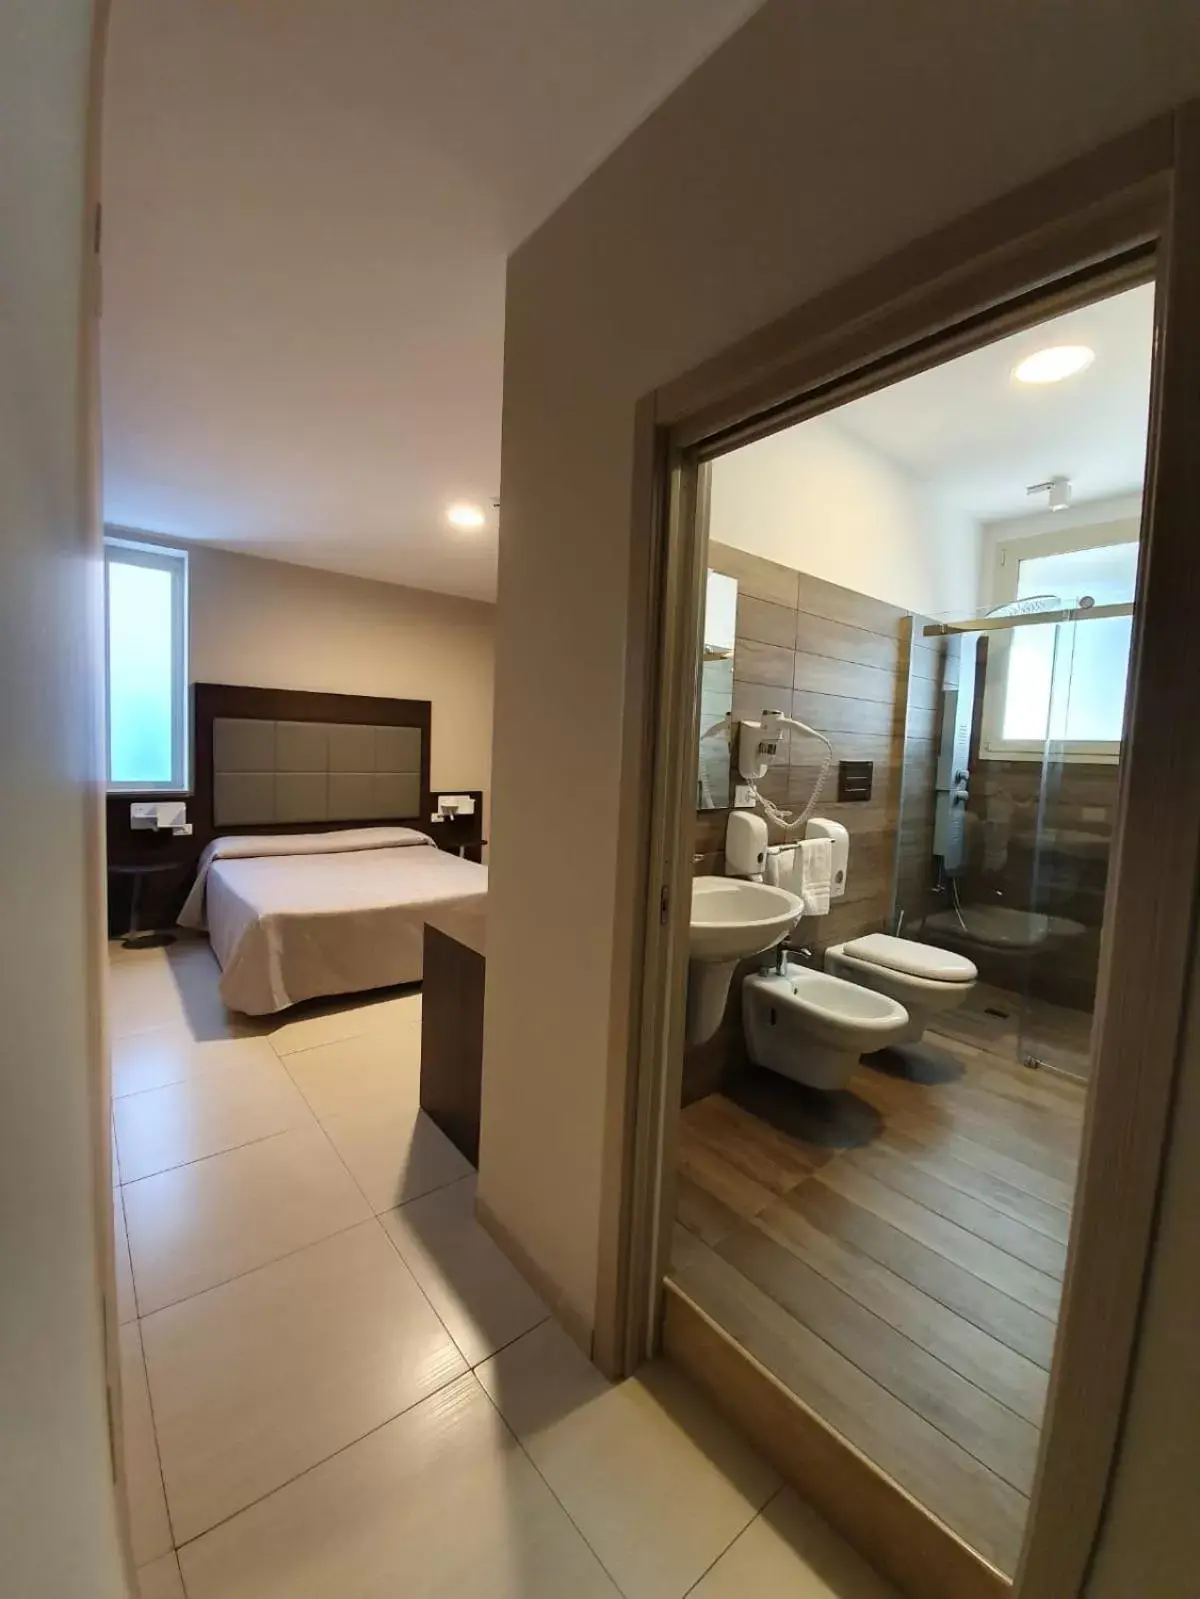 Photo of the whole room, Bathroom in Hotel Casale dei Greci